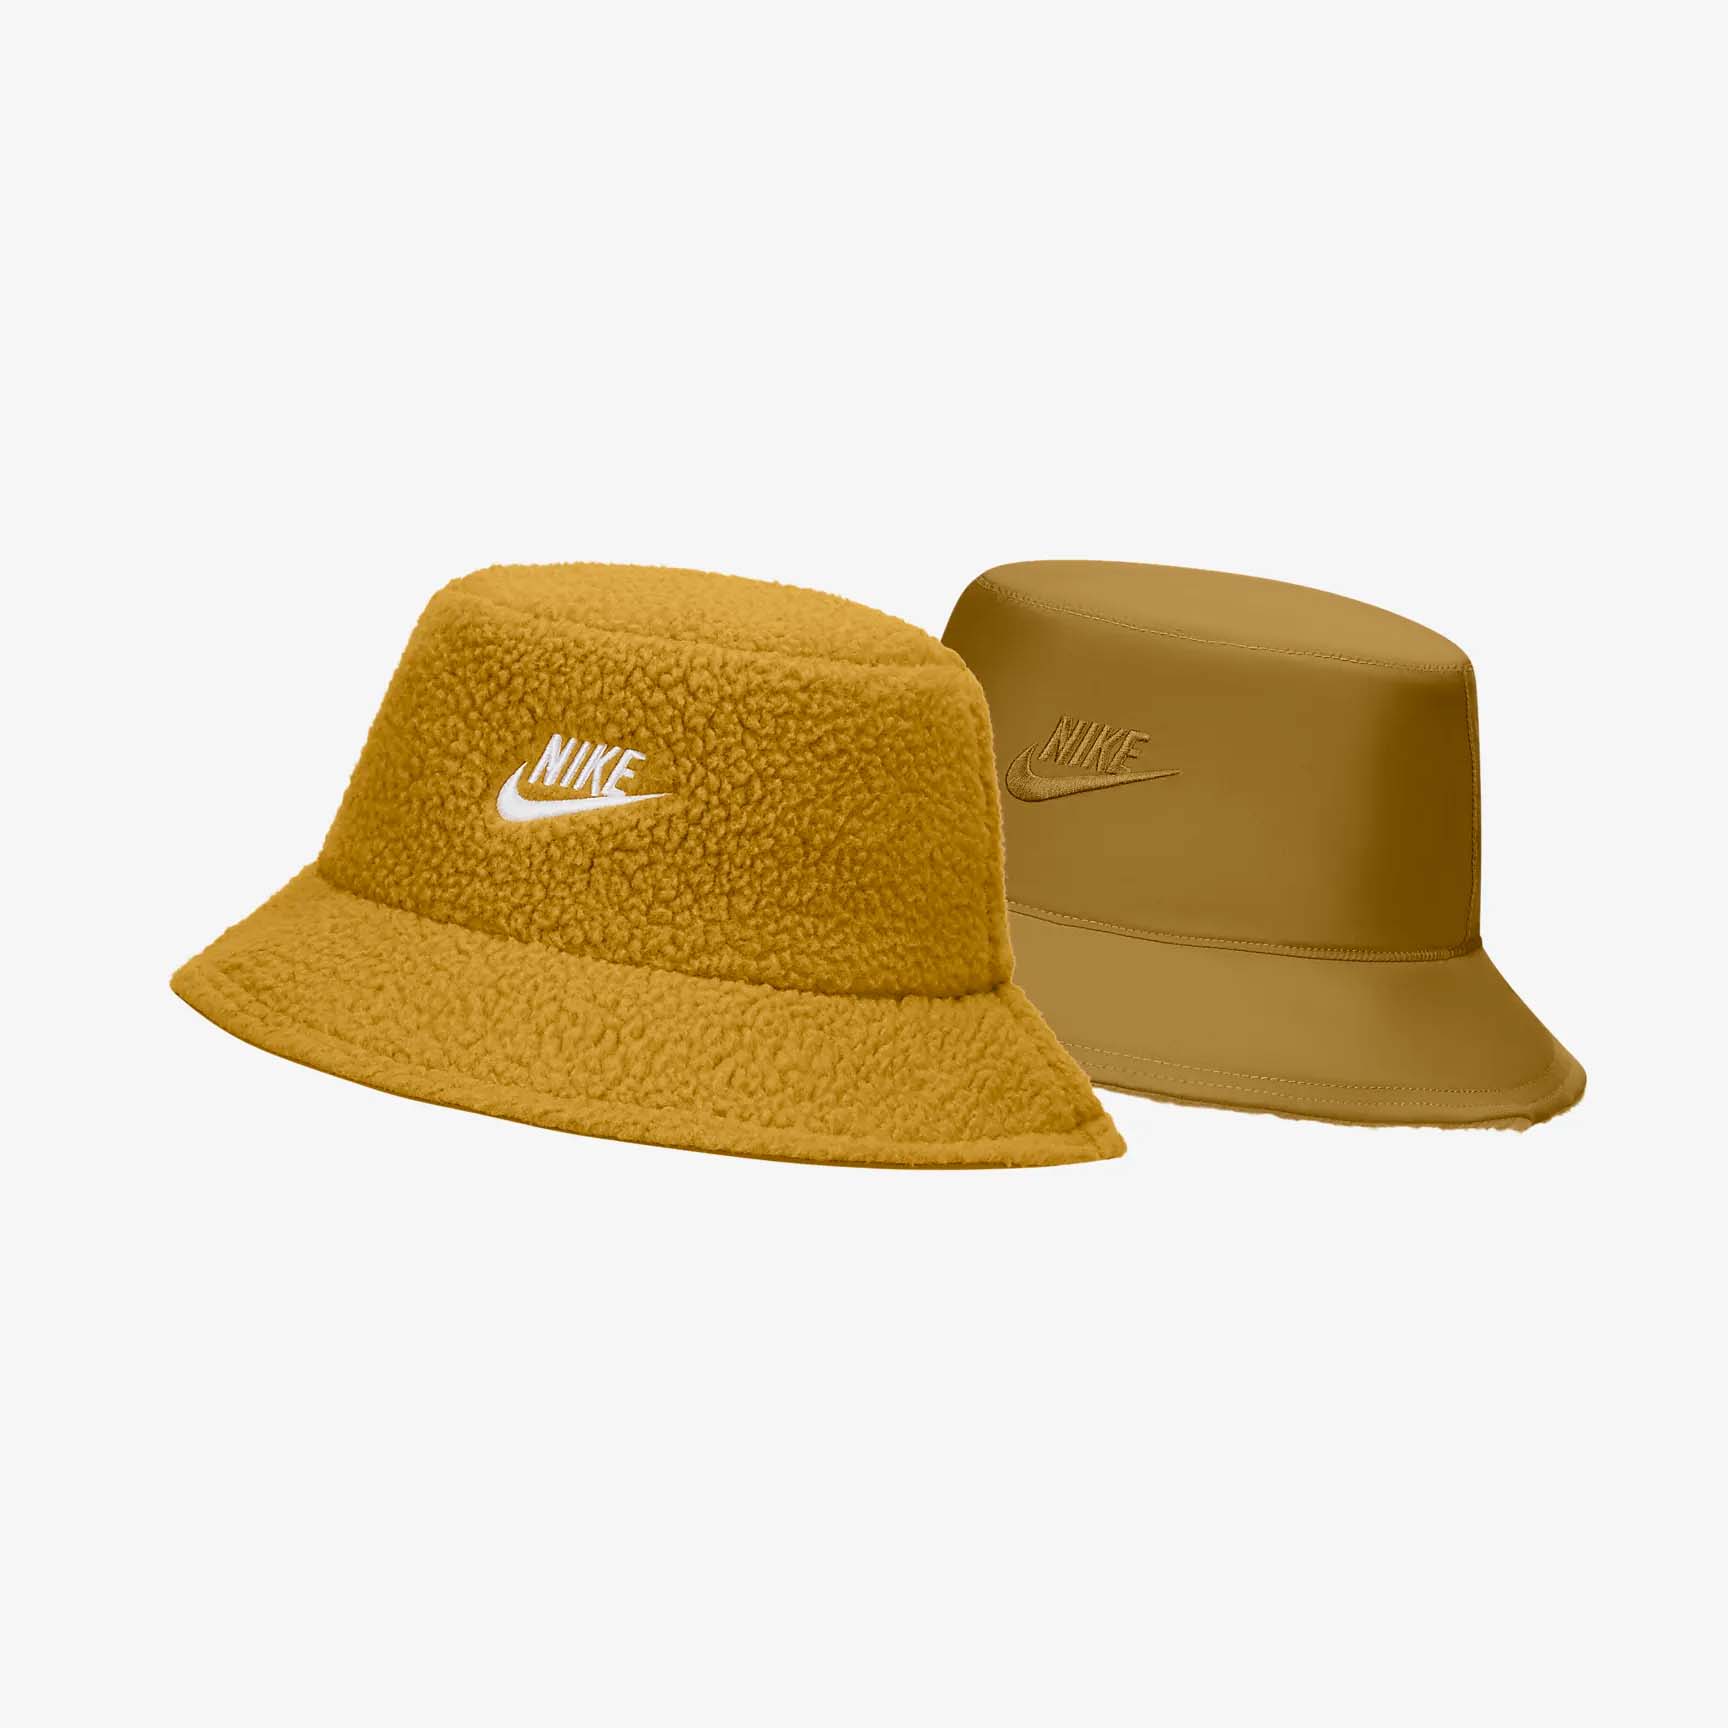 Nike Apex Reversible Bucket Hat in light brown